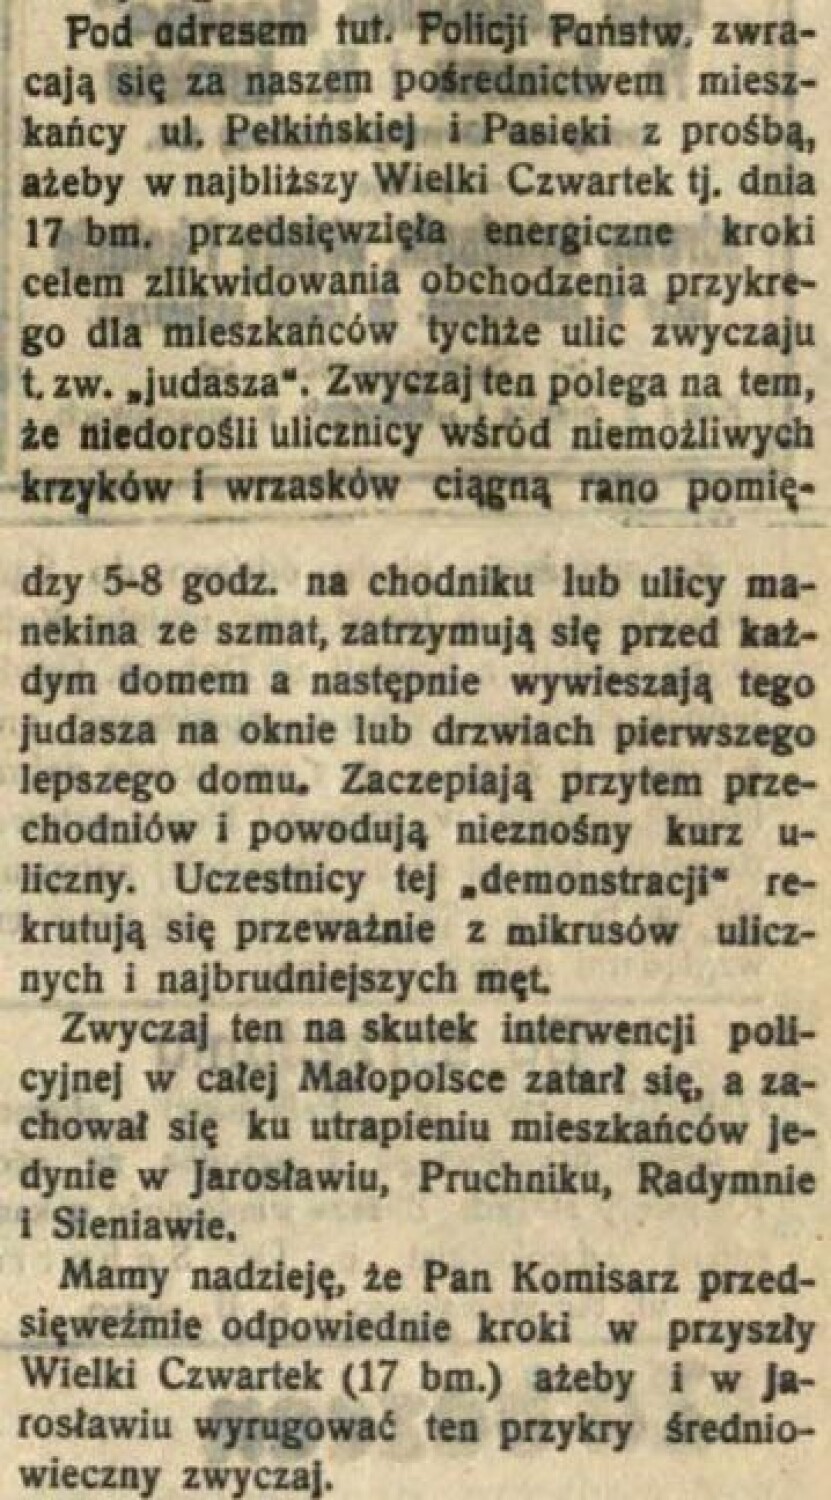 "Tygodnik jarosławski", 30 kwietnia 1930